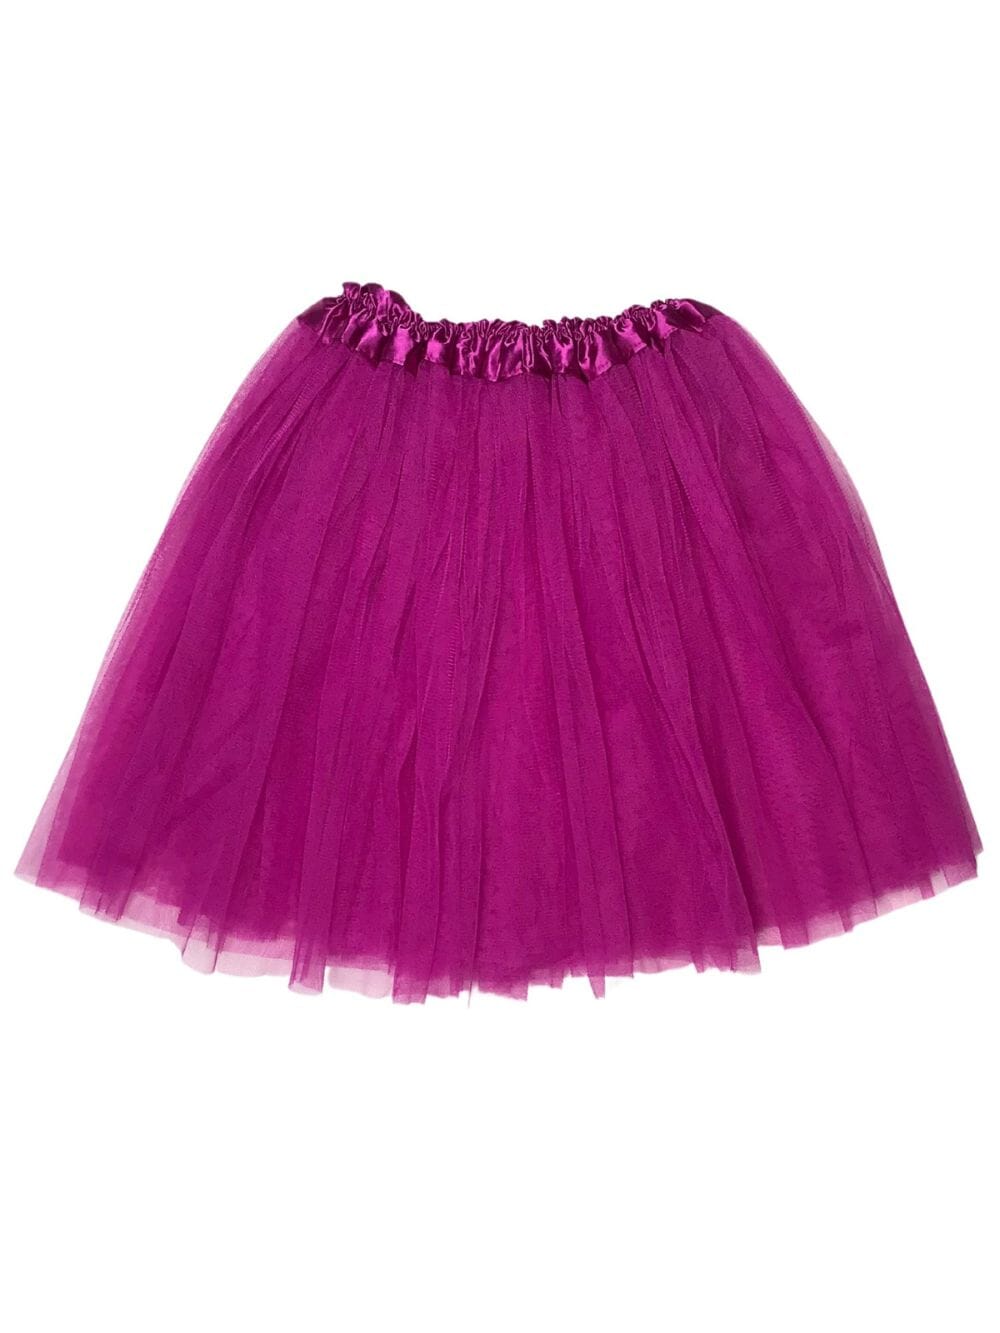 Fuchsia Tutu Skirt for Adult - Women's Size 3-Layer Tulle Skirt Ballet Costume Dance Tutus - Sydney So Sweet